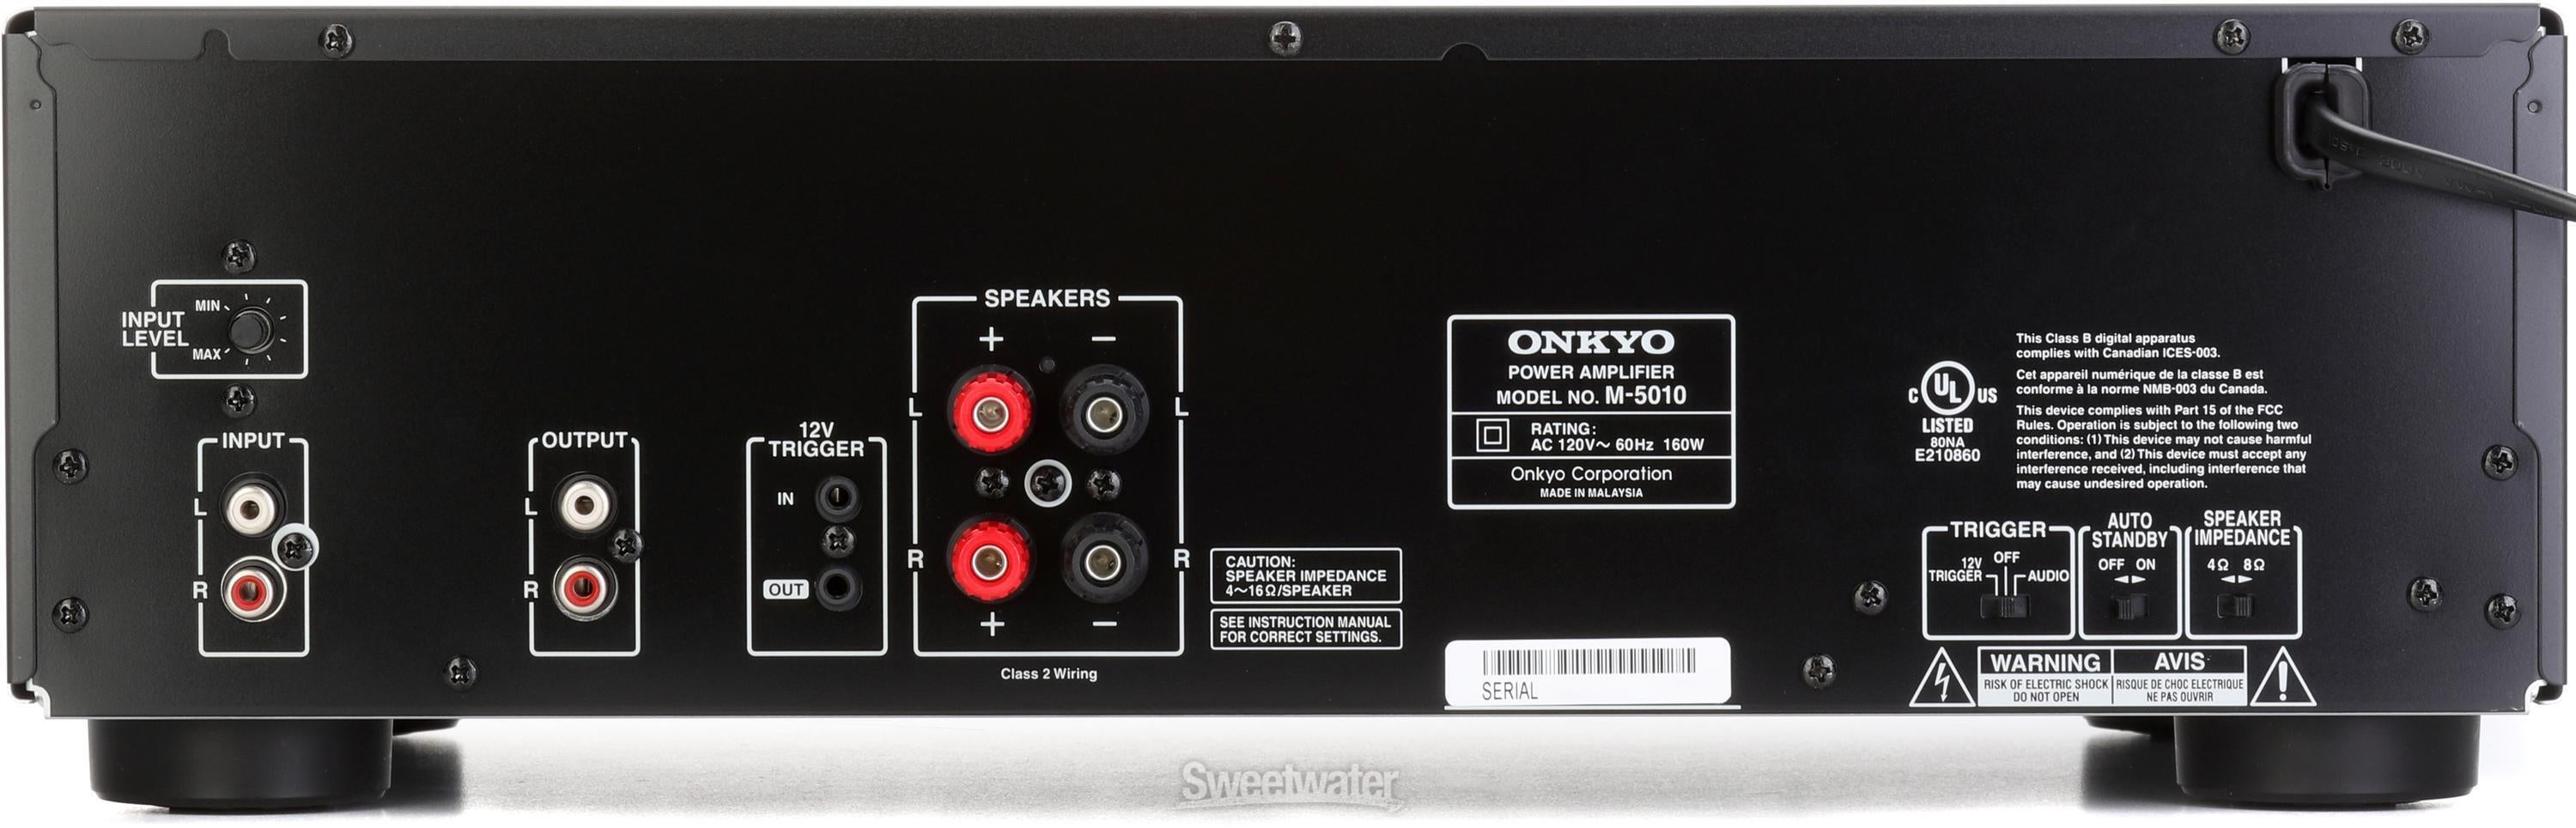 Onkyo M-5010 75-watt 2-channel Power Amplifier | Sweetwater